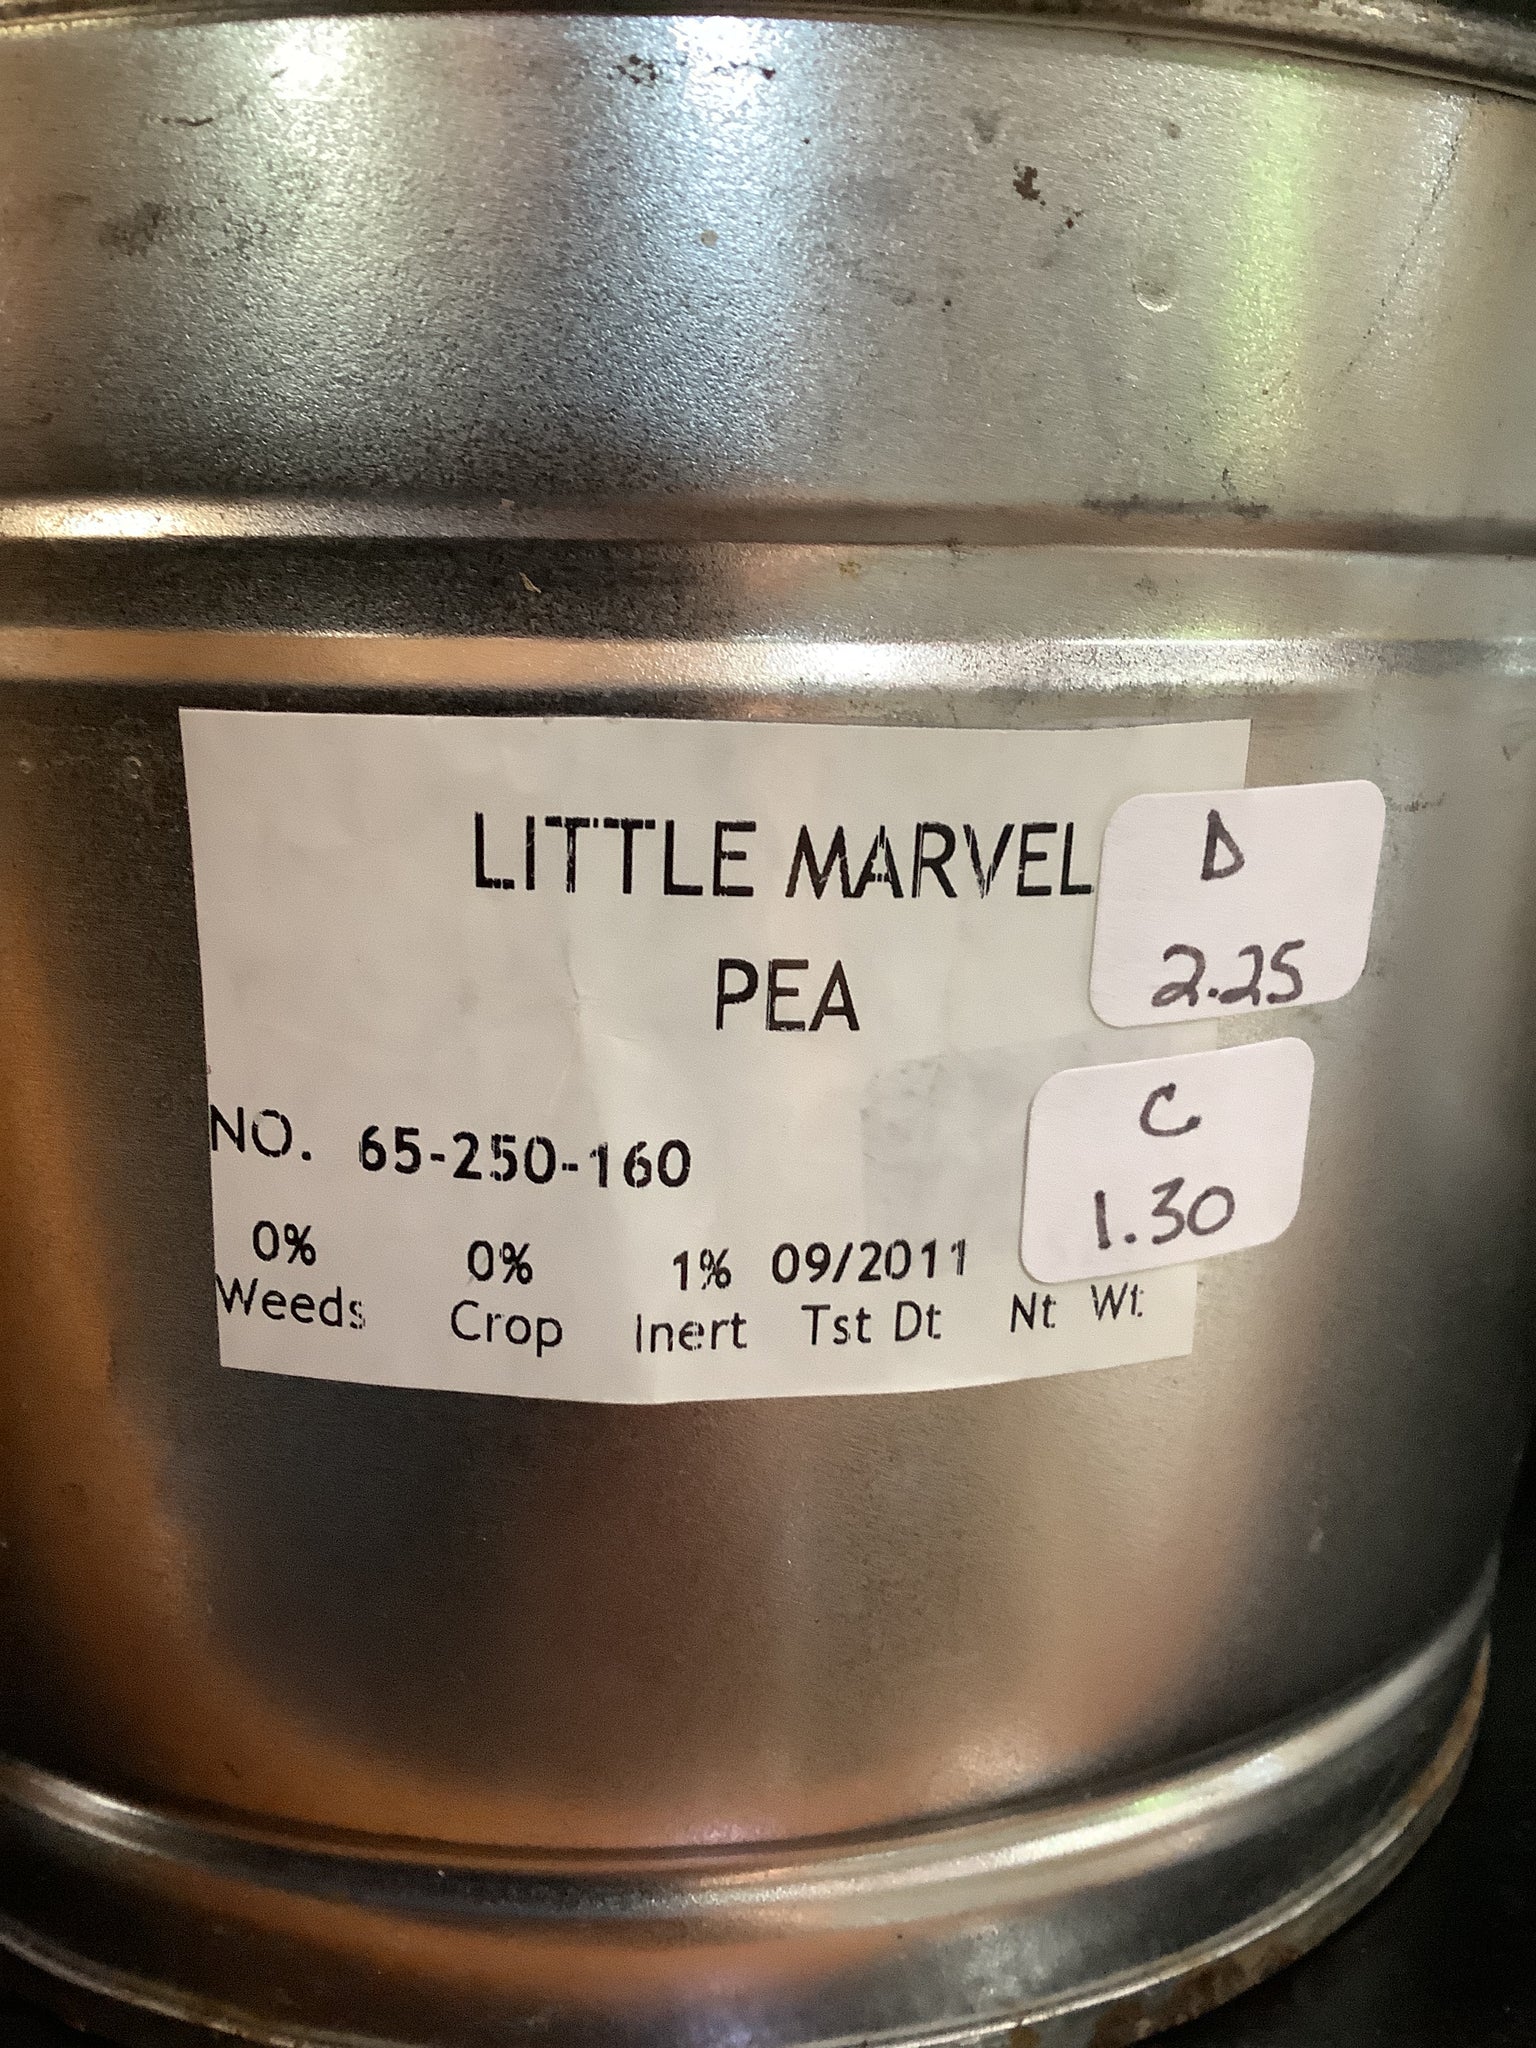 Pea-Little Marvel